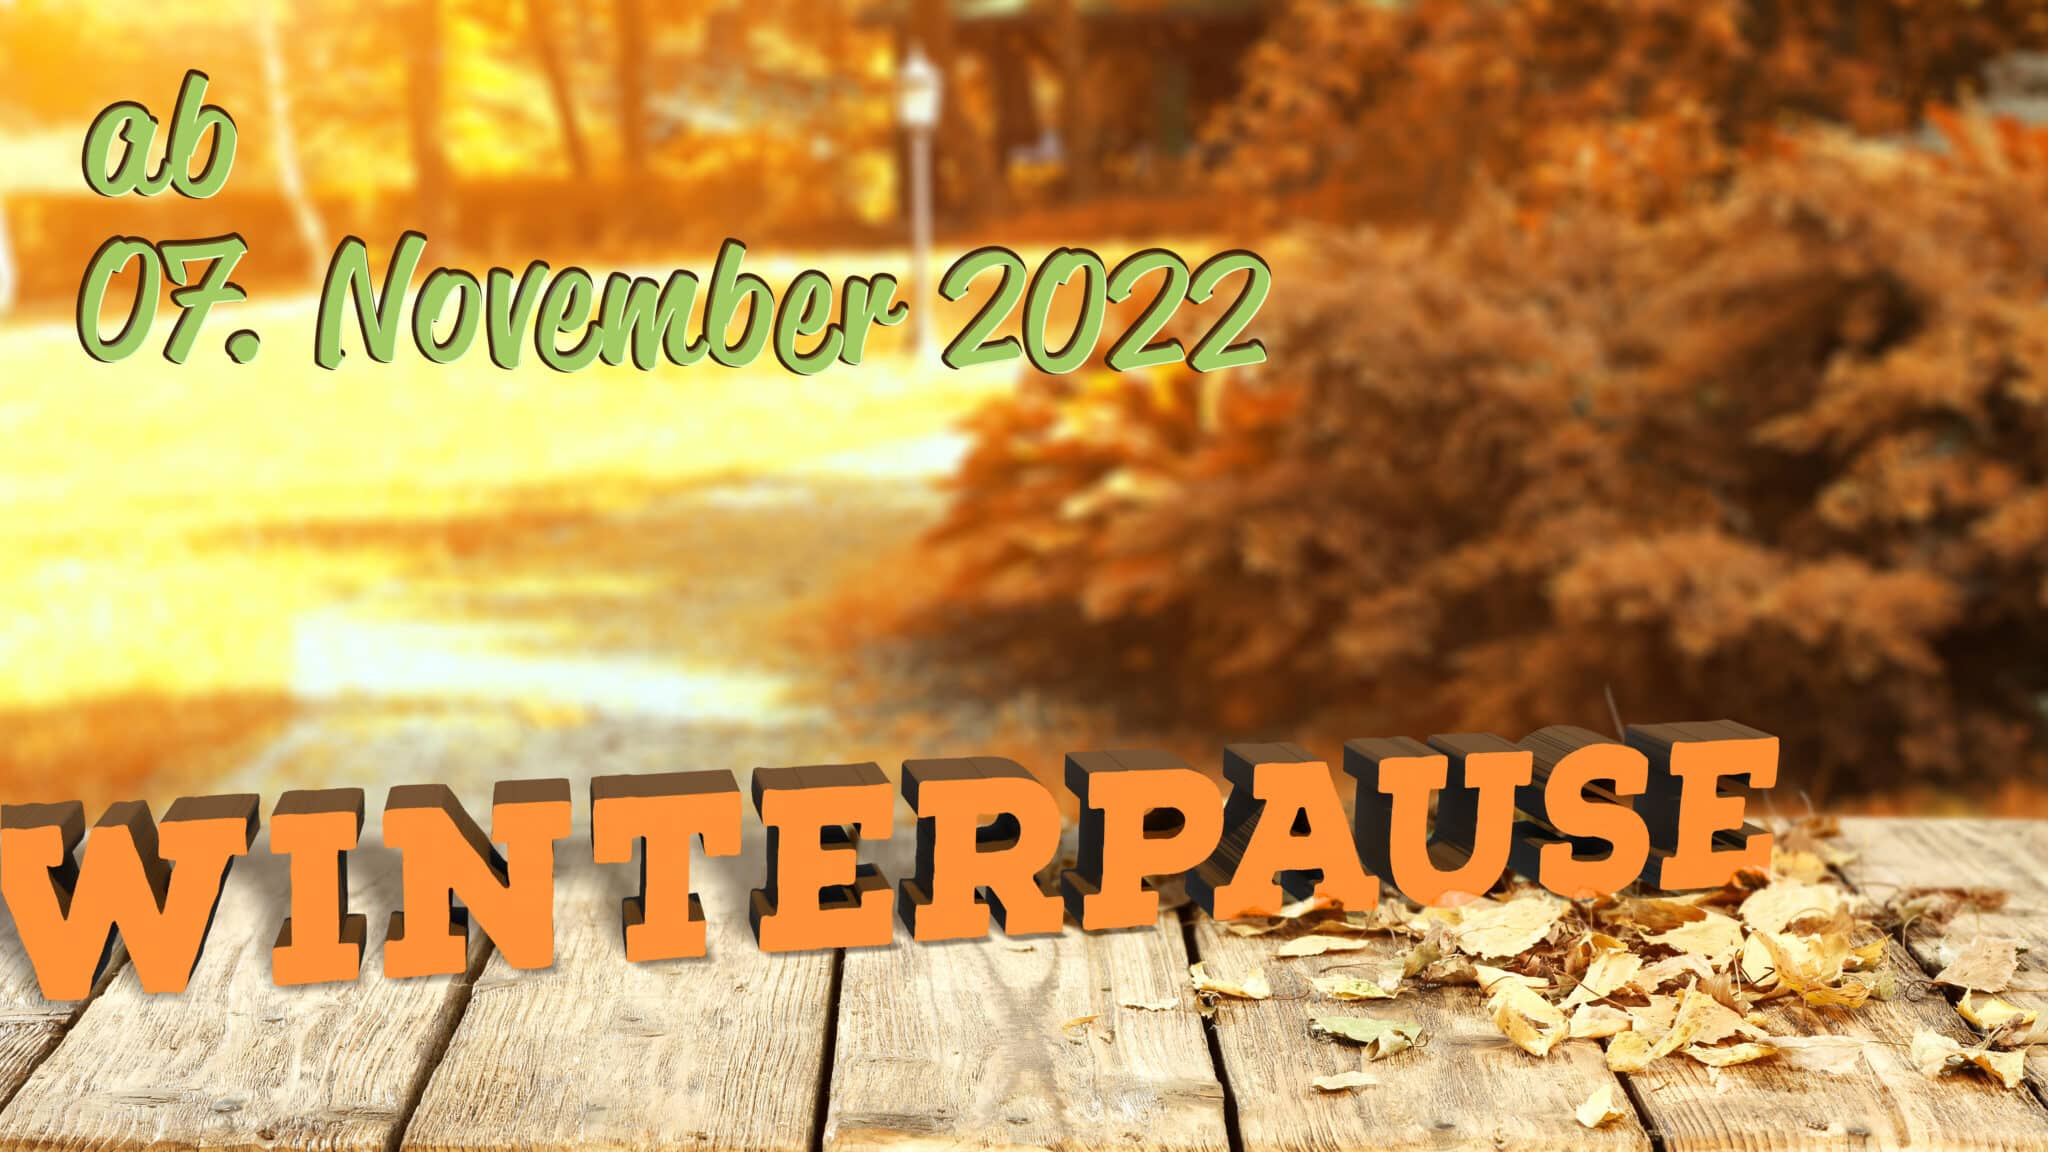 Am Mo., 7. November 2022 beginnt die Winterpause